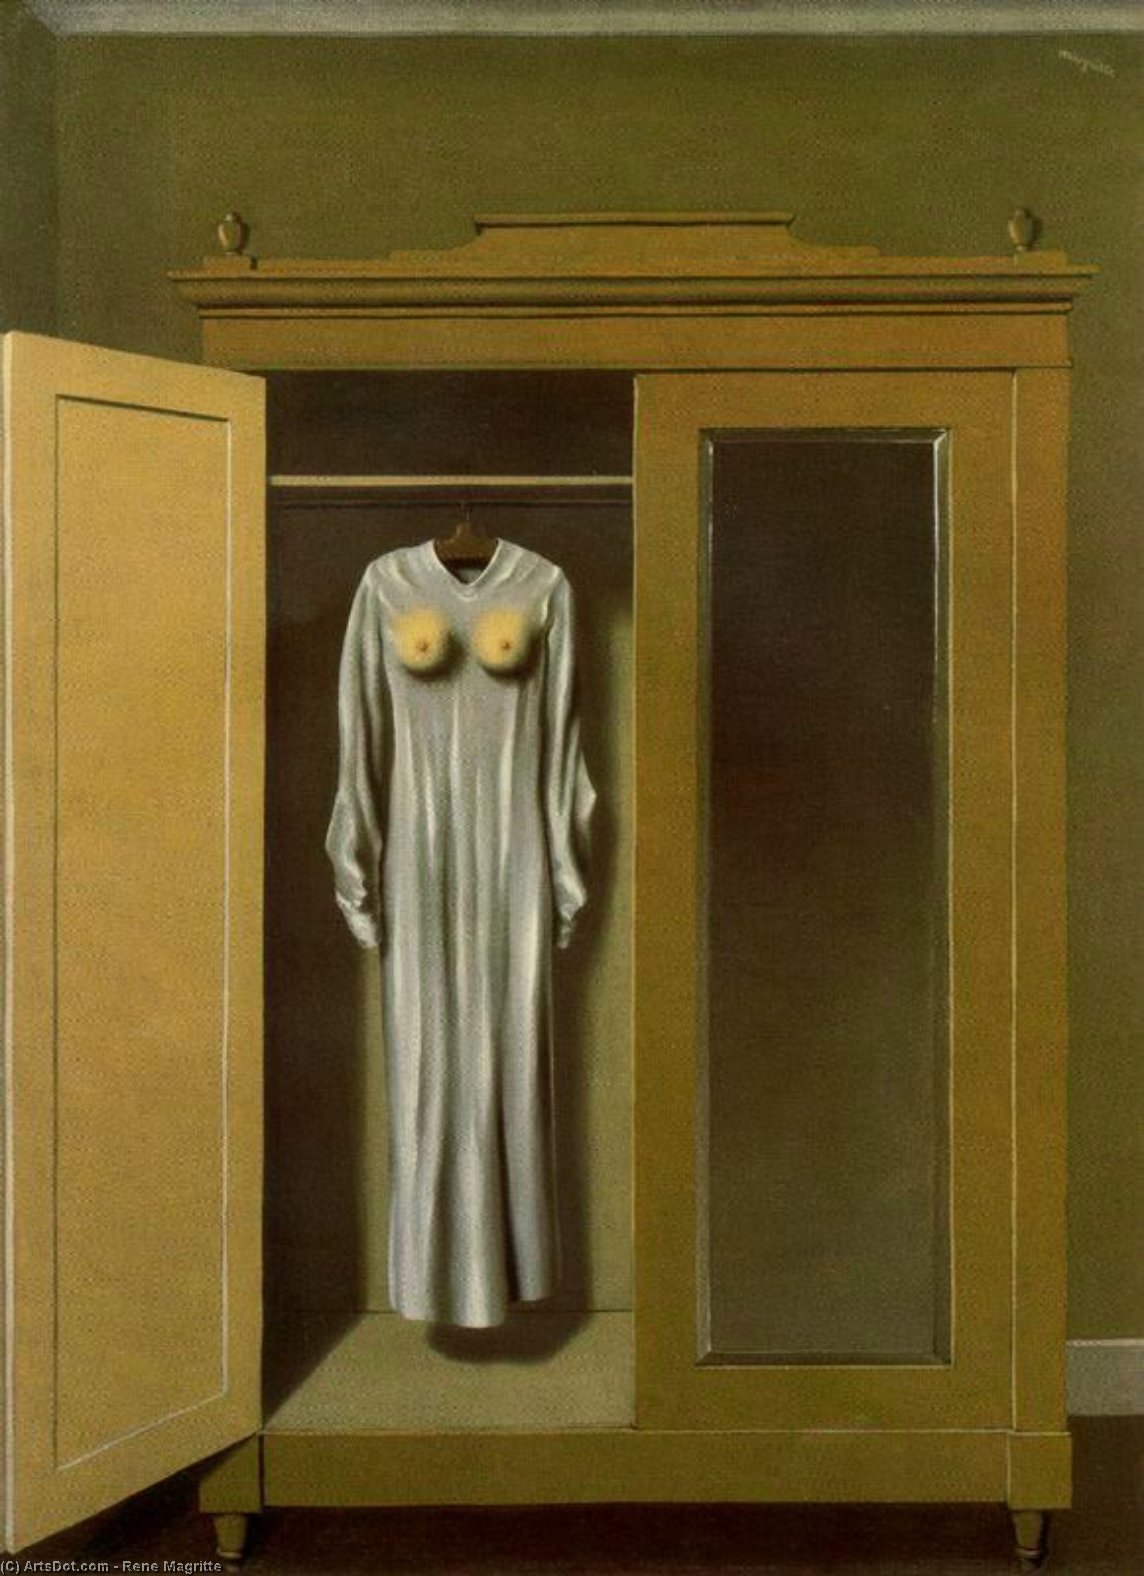 Wikioo.org - Bách khoa toàn thư về mỹ thuật - Vẽ tranh, Tác phẩm nghệ thuật Rene Magritte - Homage to Mack Sennett